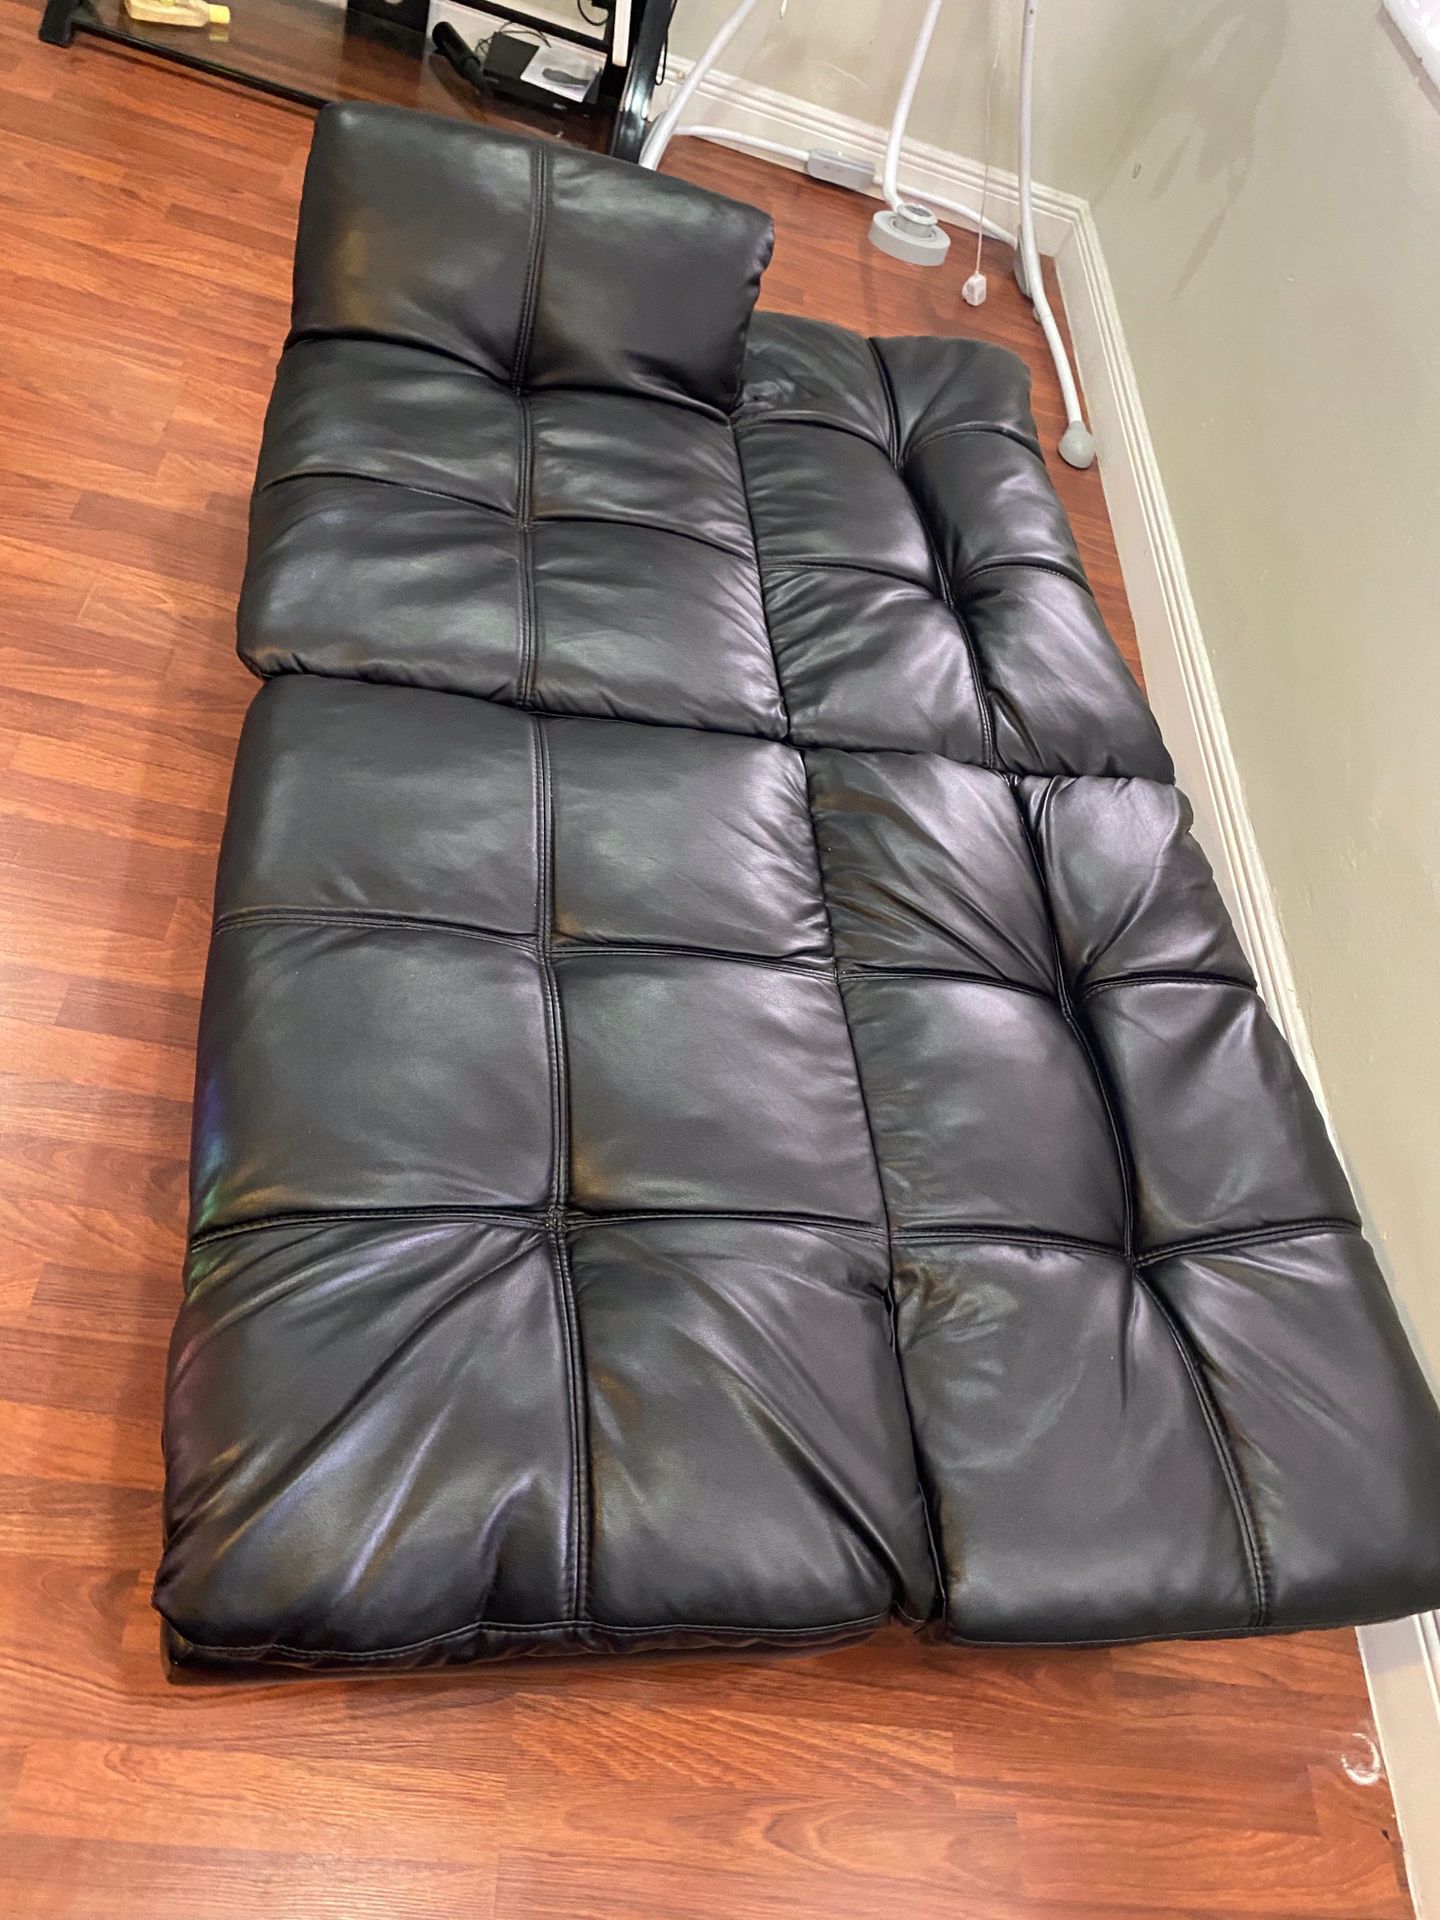 Black leather futon and Sofa